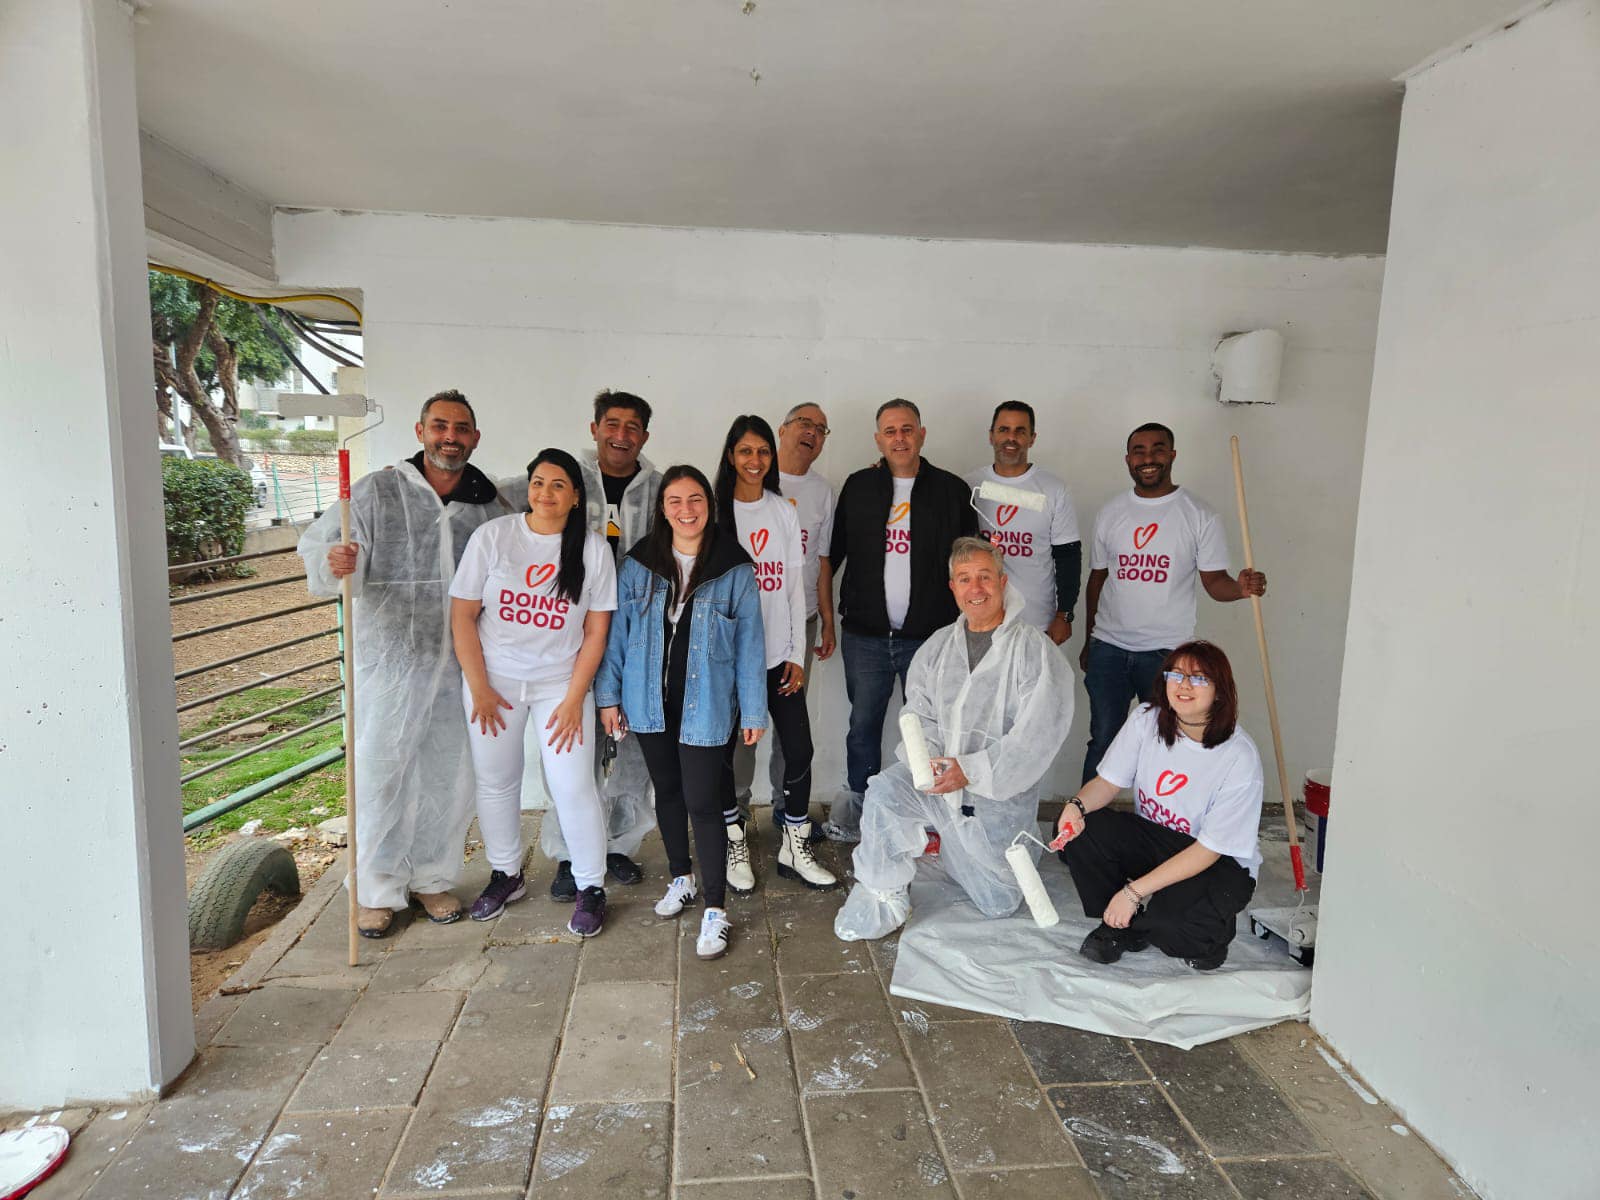 בפרויקט ענק מטעם עיריית אשדוד ומאות מתנדבים צבעו ושדרגו כ-80 מקלטים ברחבי העיר (צילום: עיריית אשדוד, פייסבוק)